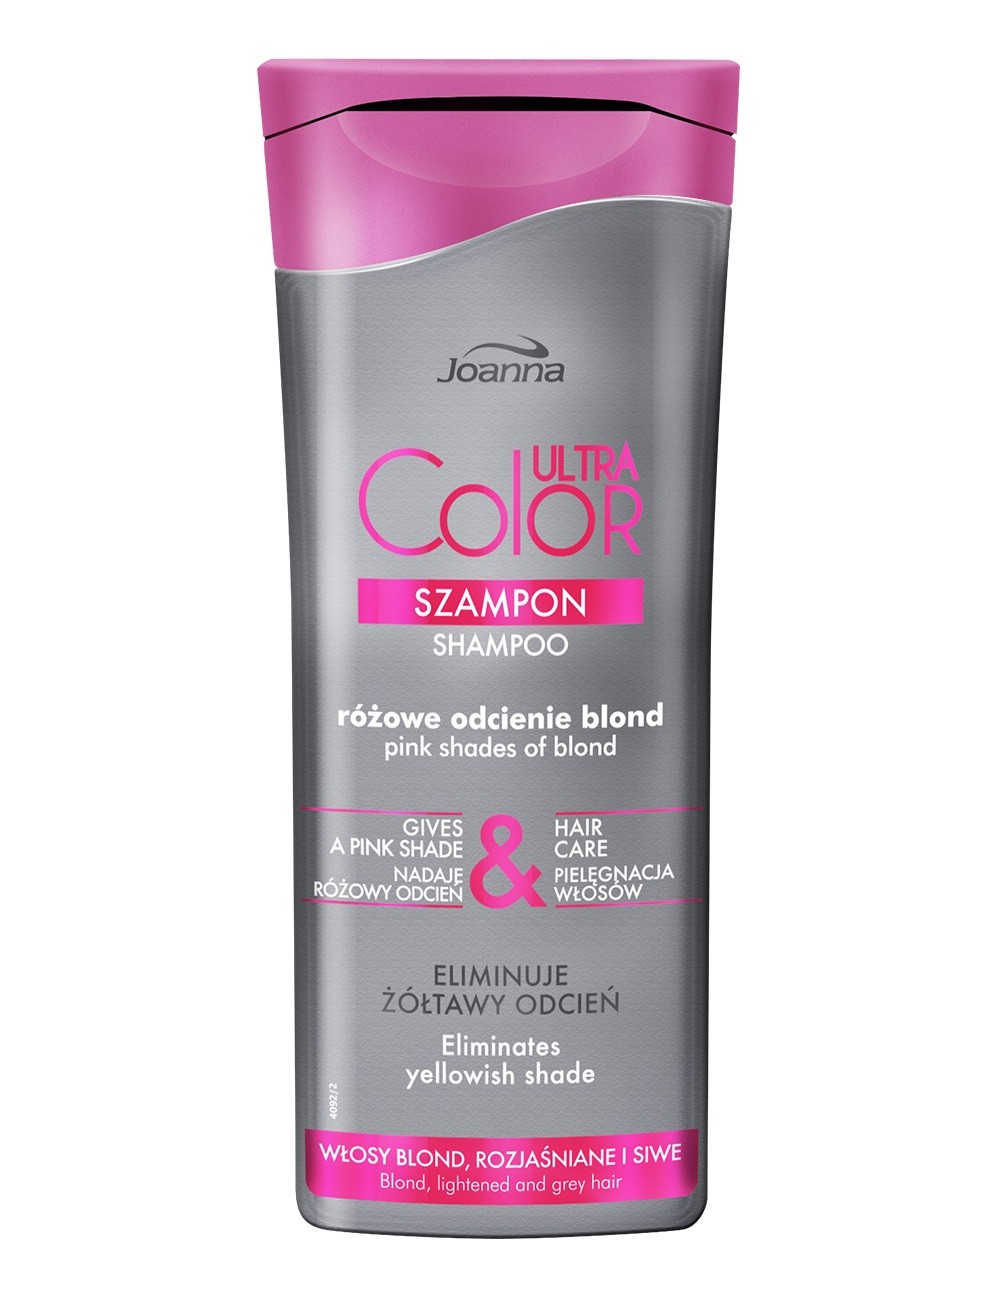 Joanna Ultra Color System Szampon Nadający Różowy Odcień dla Włosów Blond, Rozjaśnianych i Siwych 200 ml